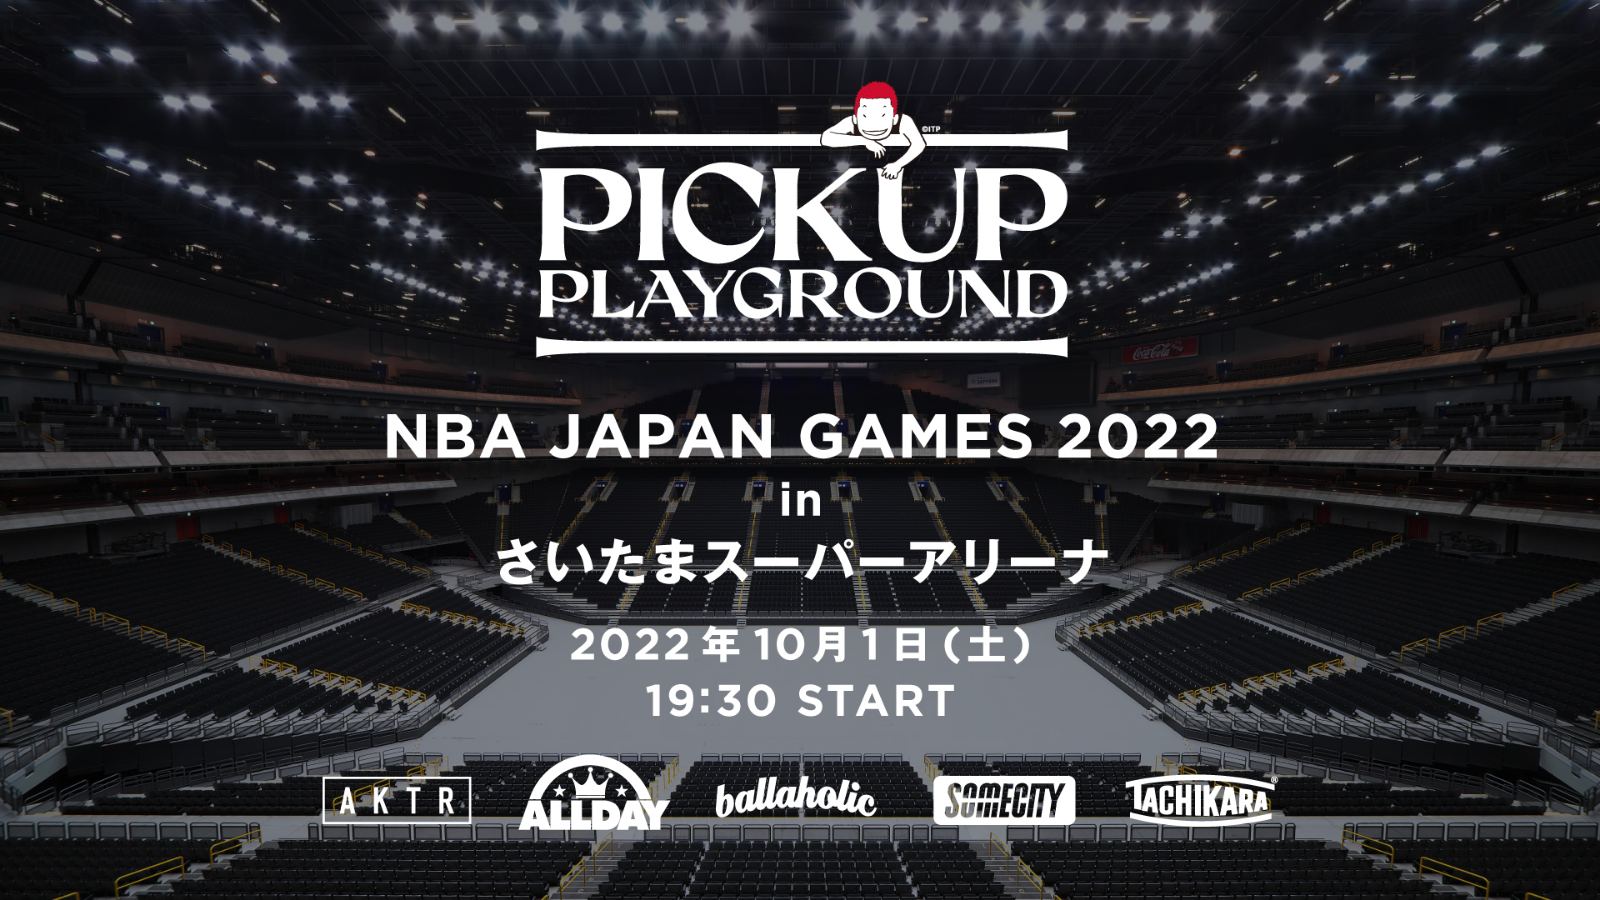 お知らせ】「NBA Japan Games 2022」でPICK UP PLAYGROUNDの開催が決定